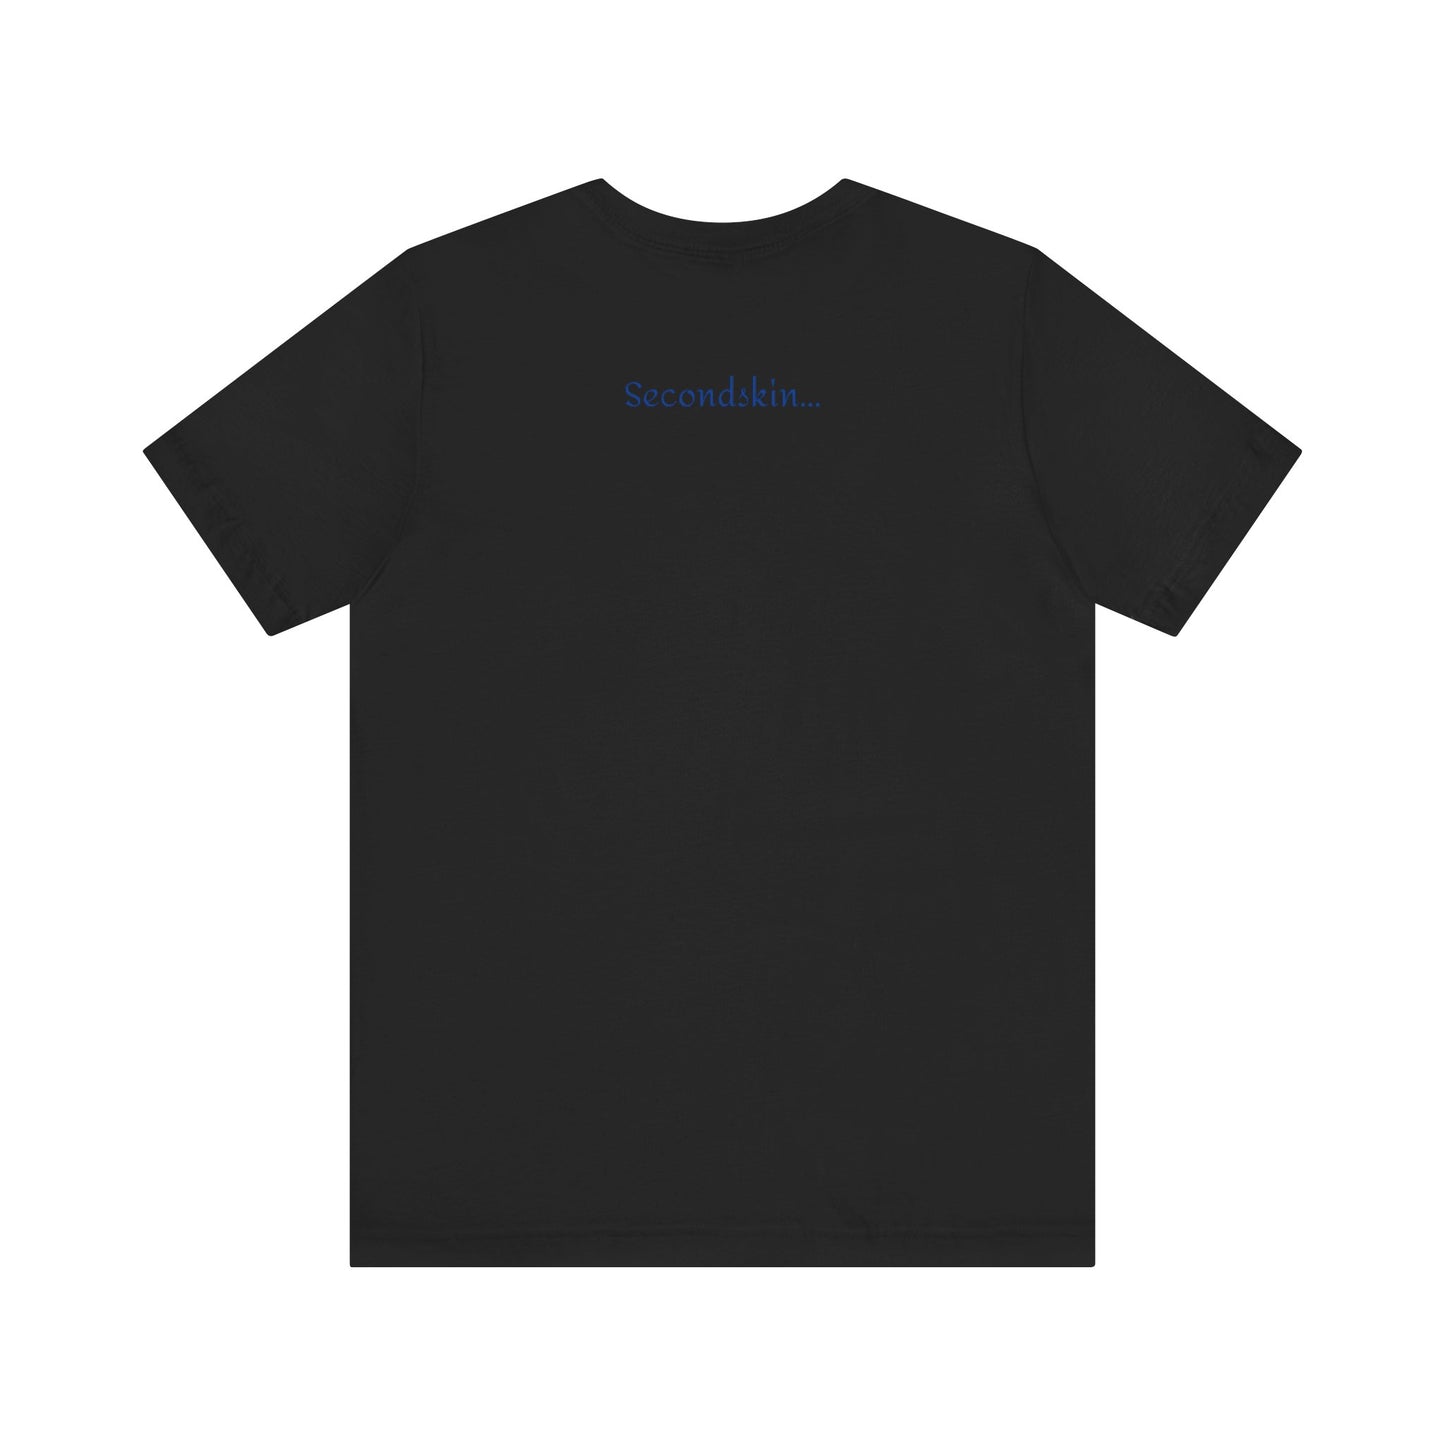 Camiseta unisex de manga corta con estampado de jersey